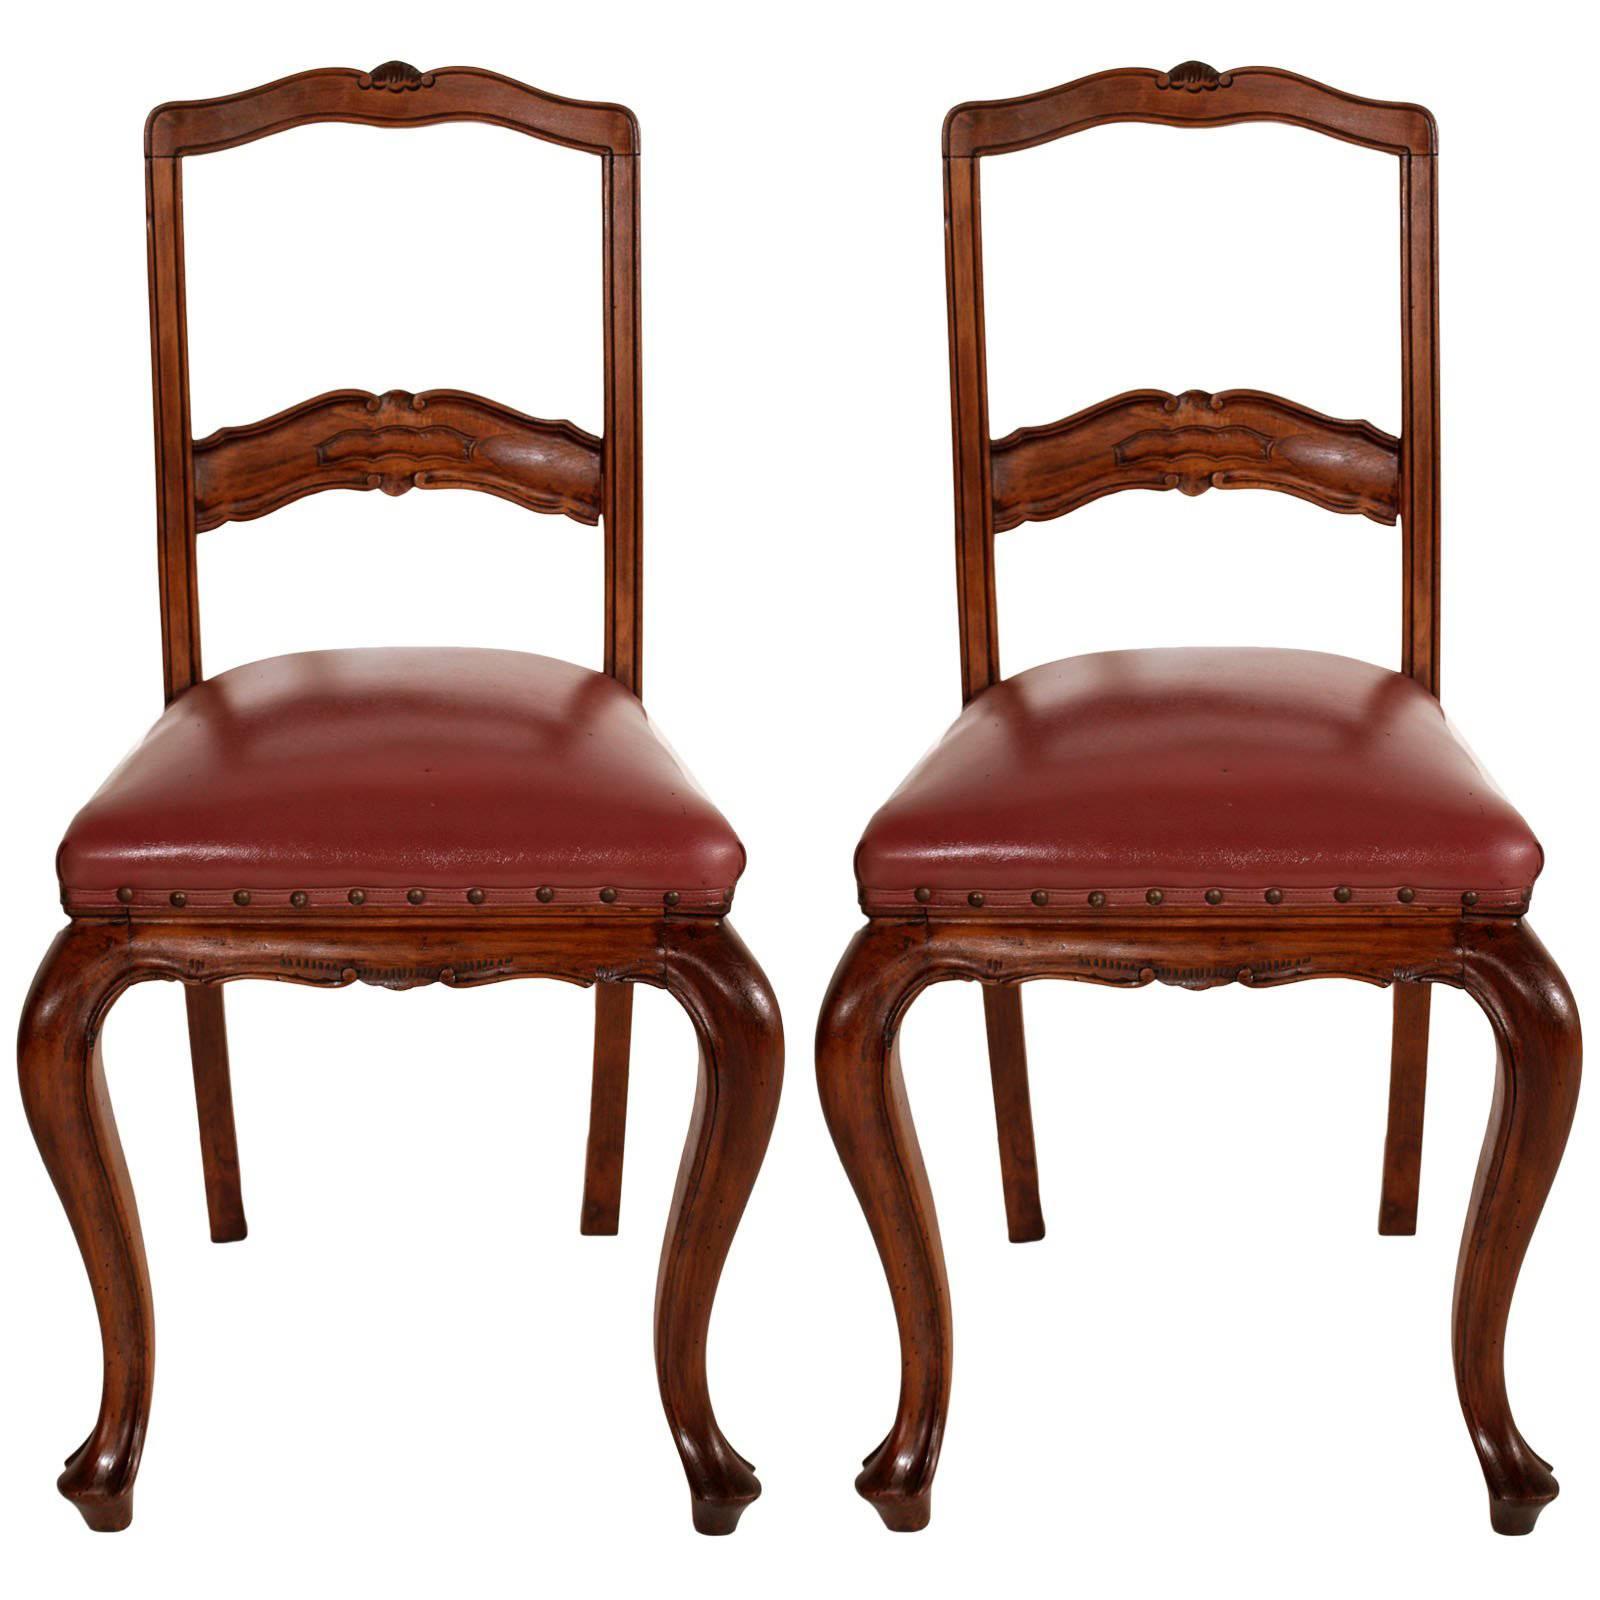 Paire de chaises néoclassiques de l'ère Art nouveau en noyer sculpté à la main avec assise en cuir